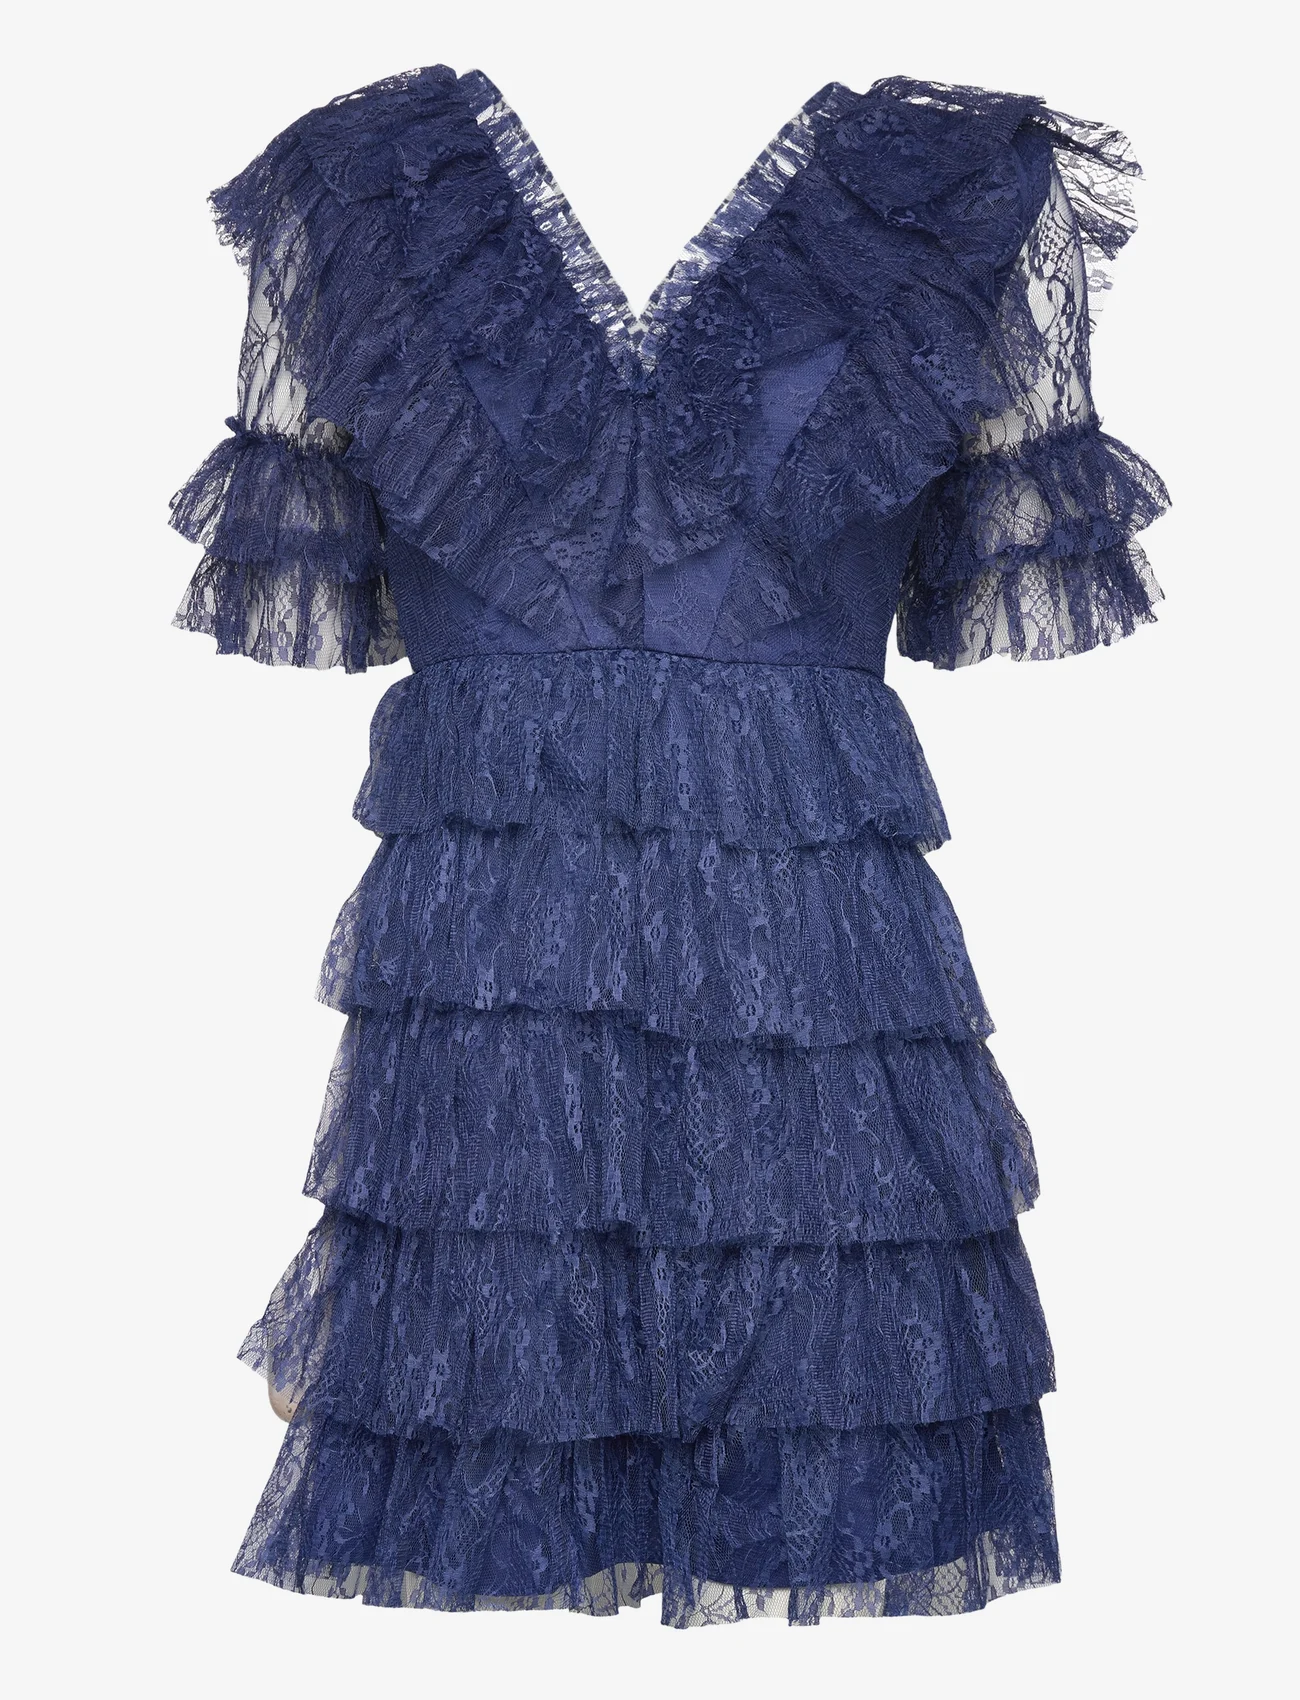 Malina - Sky dress - odzież imprezowa w cenach outletowych - indigo - 0